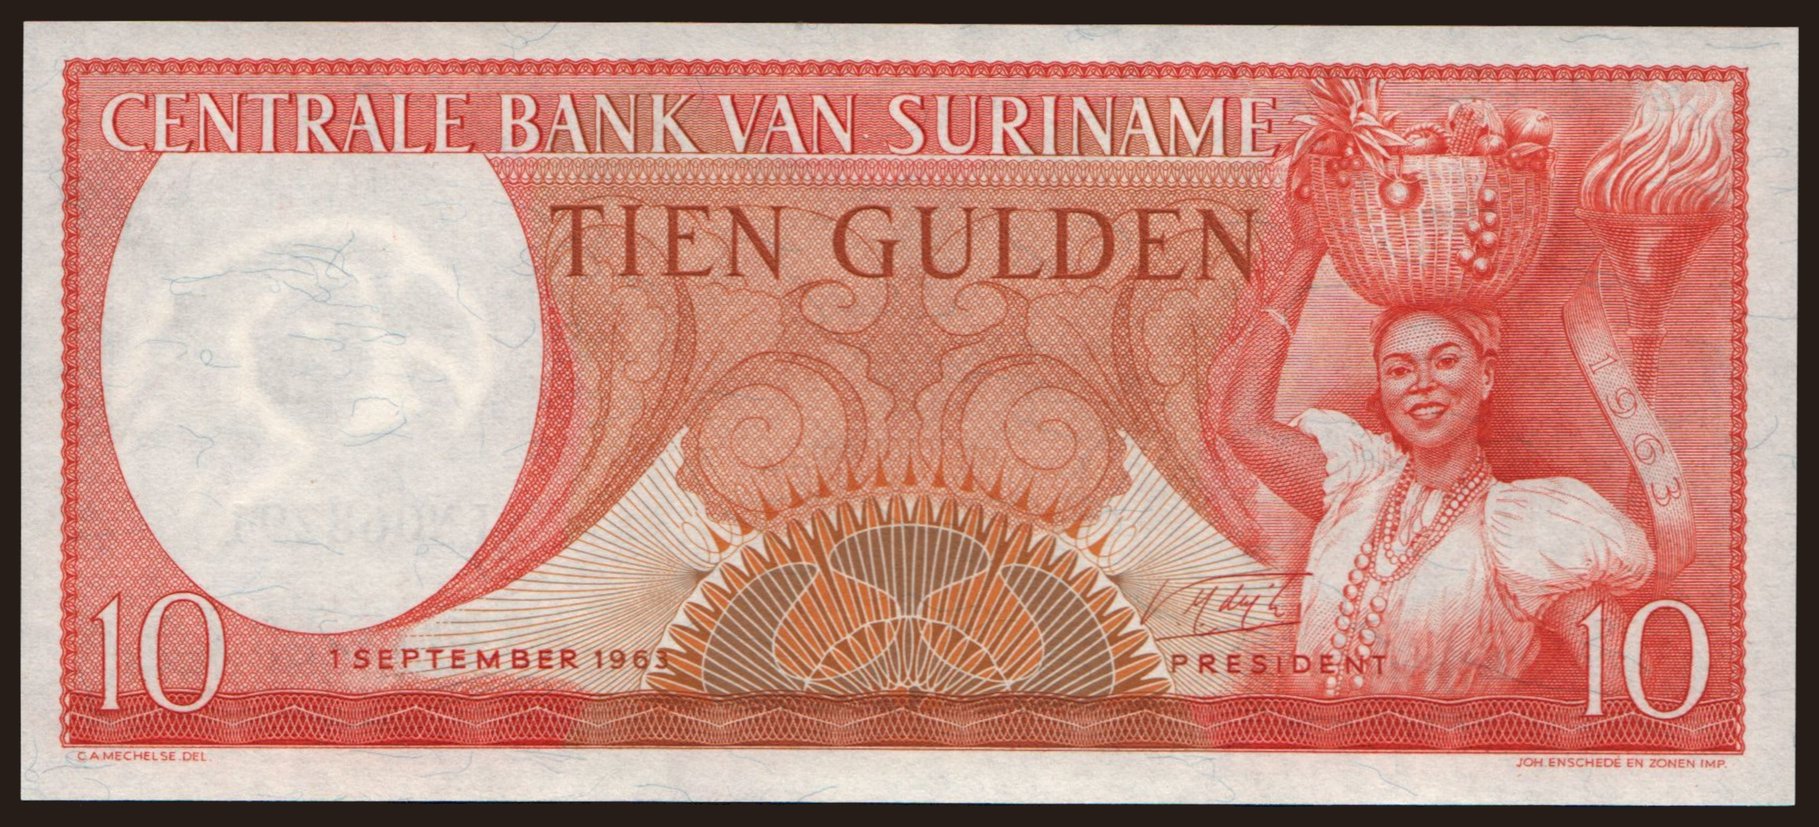 10 gulden, 1963